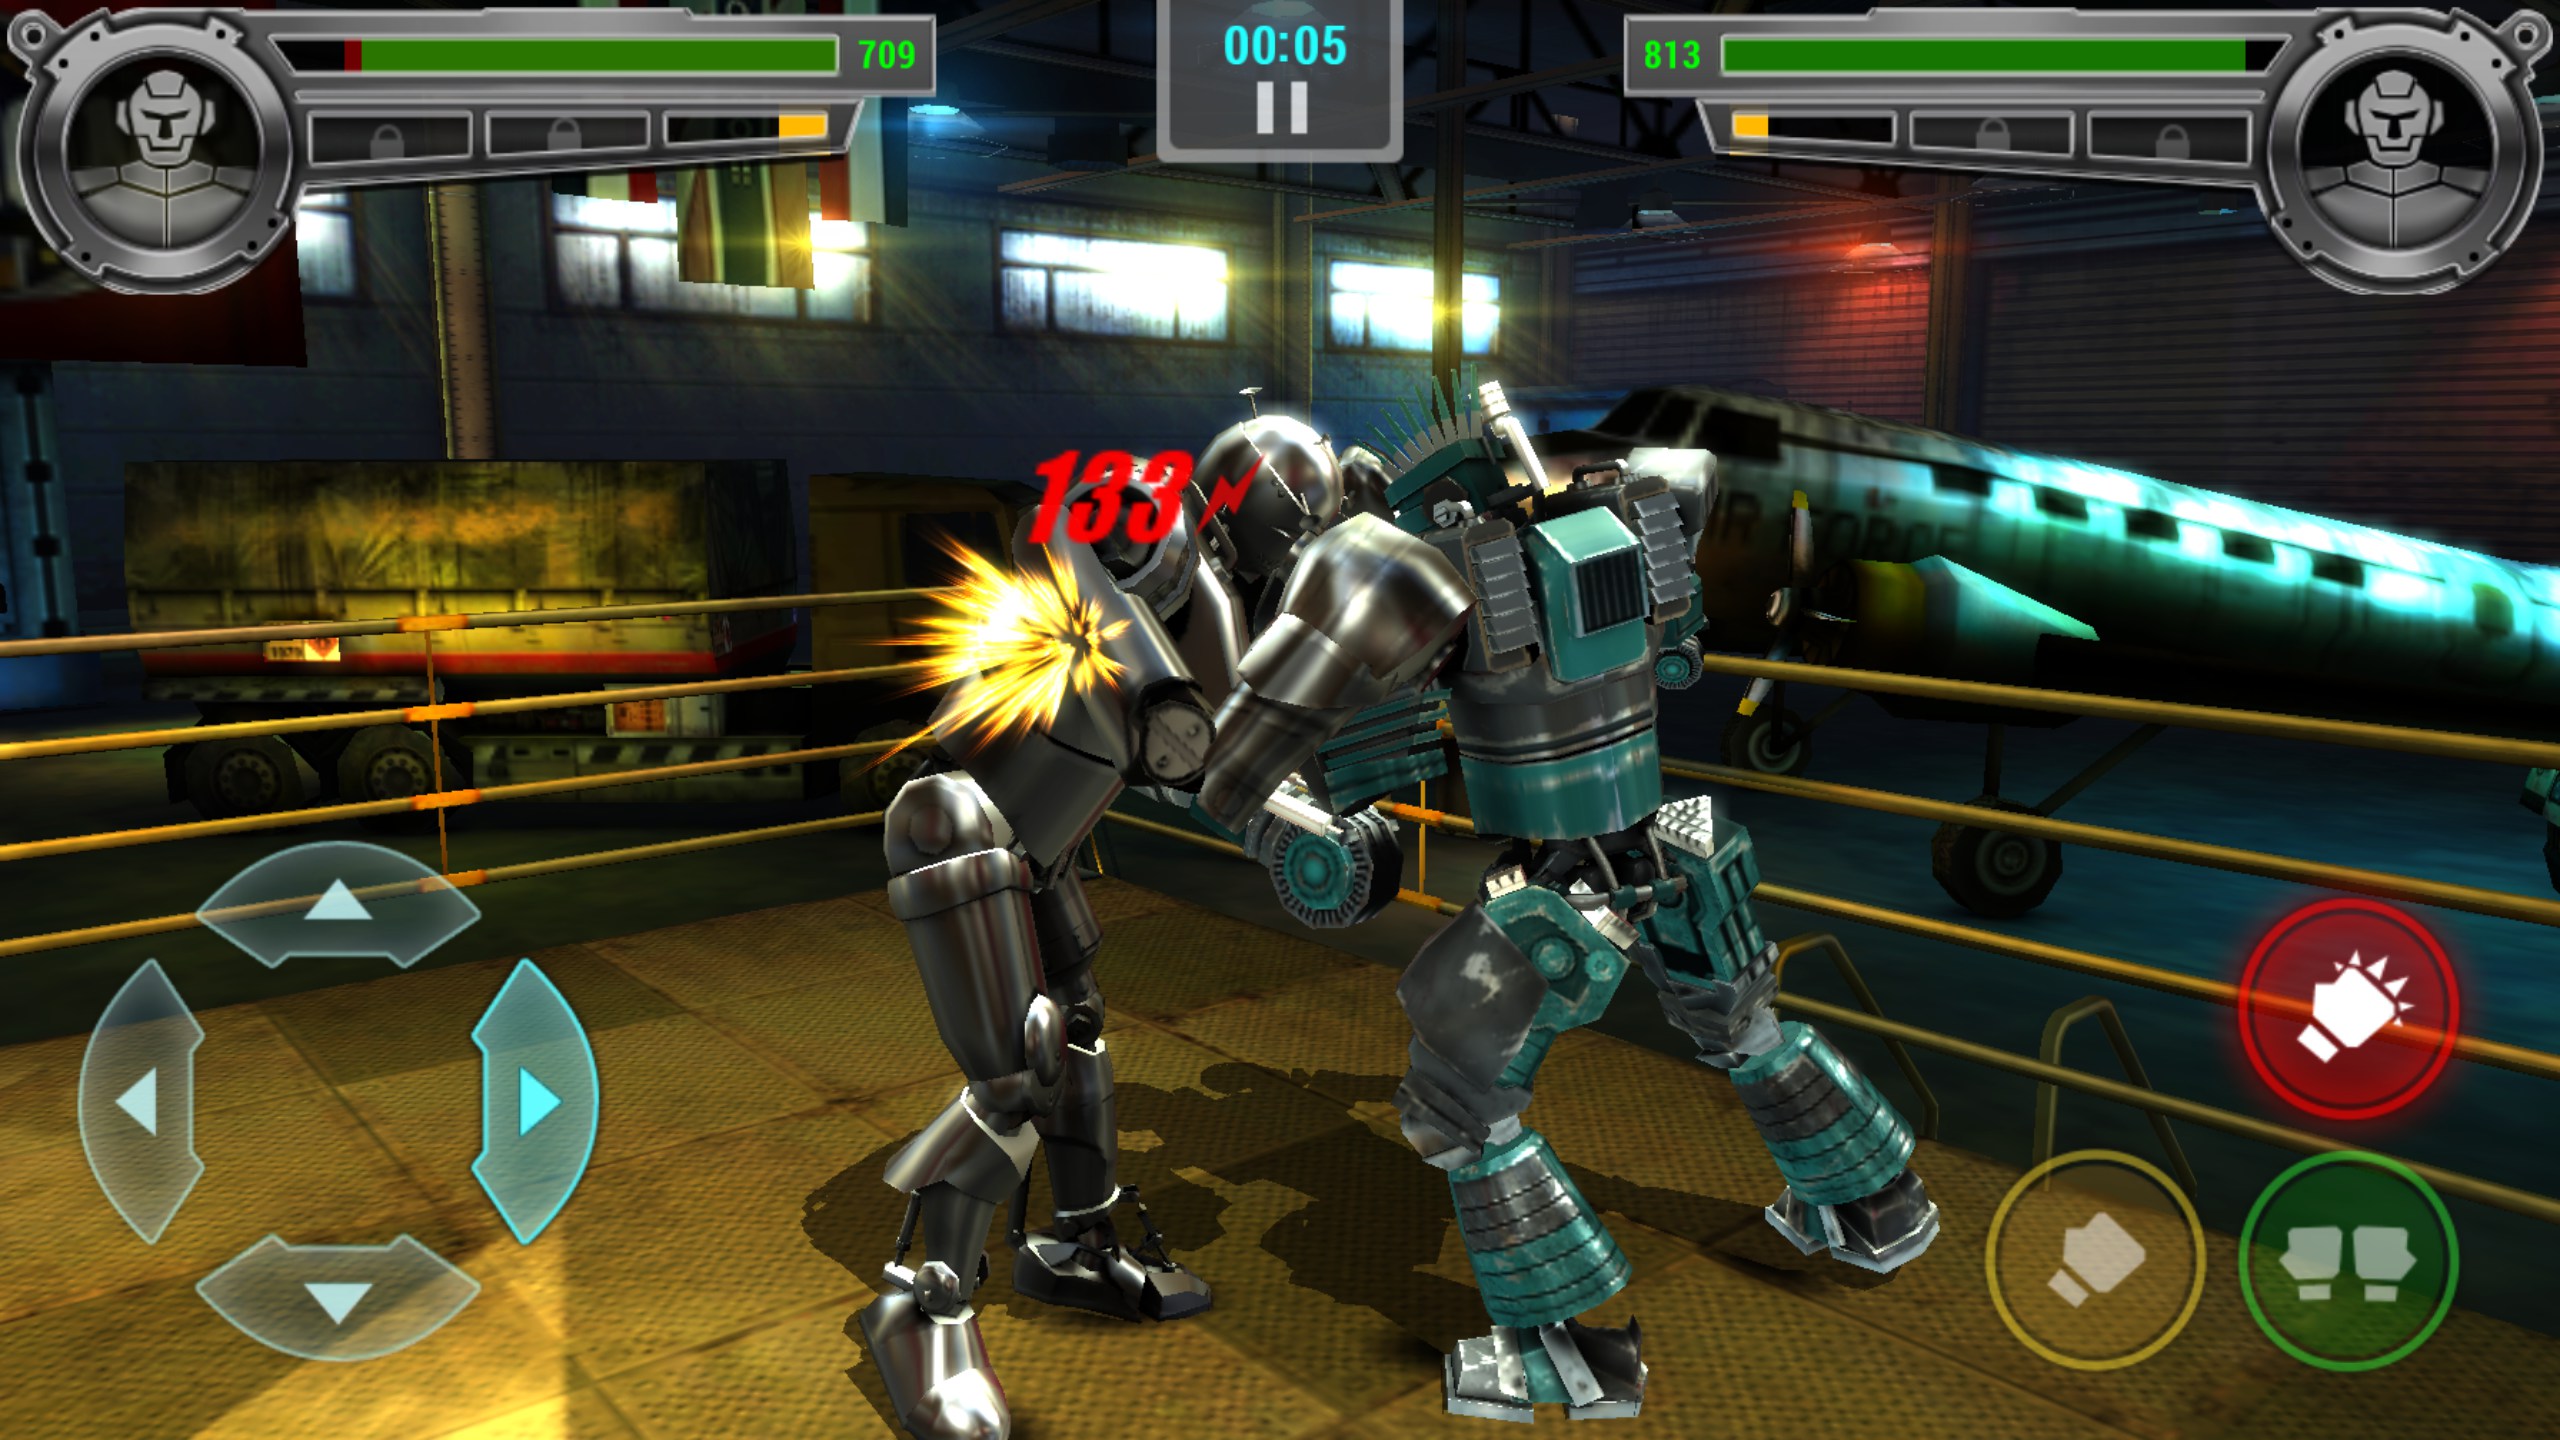 Игры музыка роботы. Real Steel Robot Boxing игра. Живая сталь игра Boxing Champions. Real Steel 2 игра. Real Steel игра андроид атом.